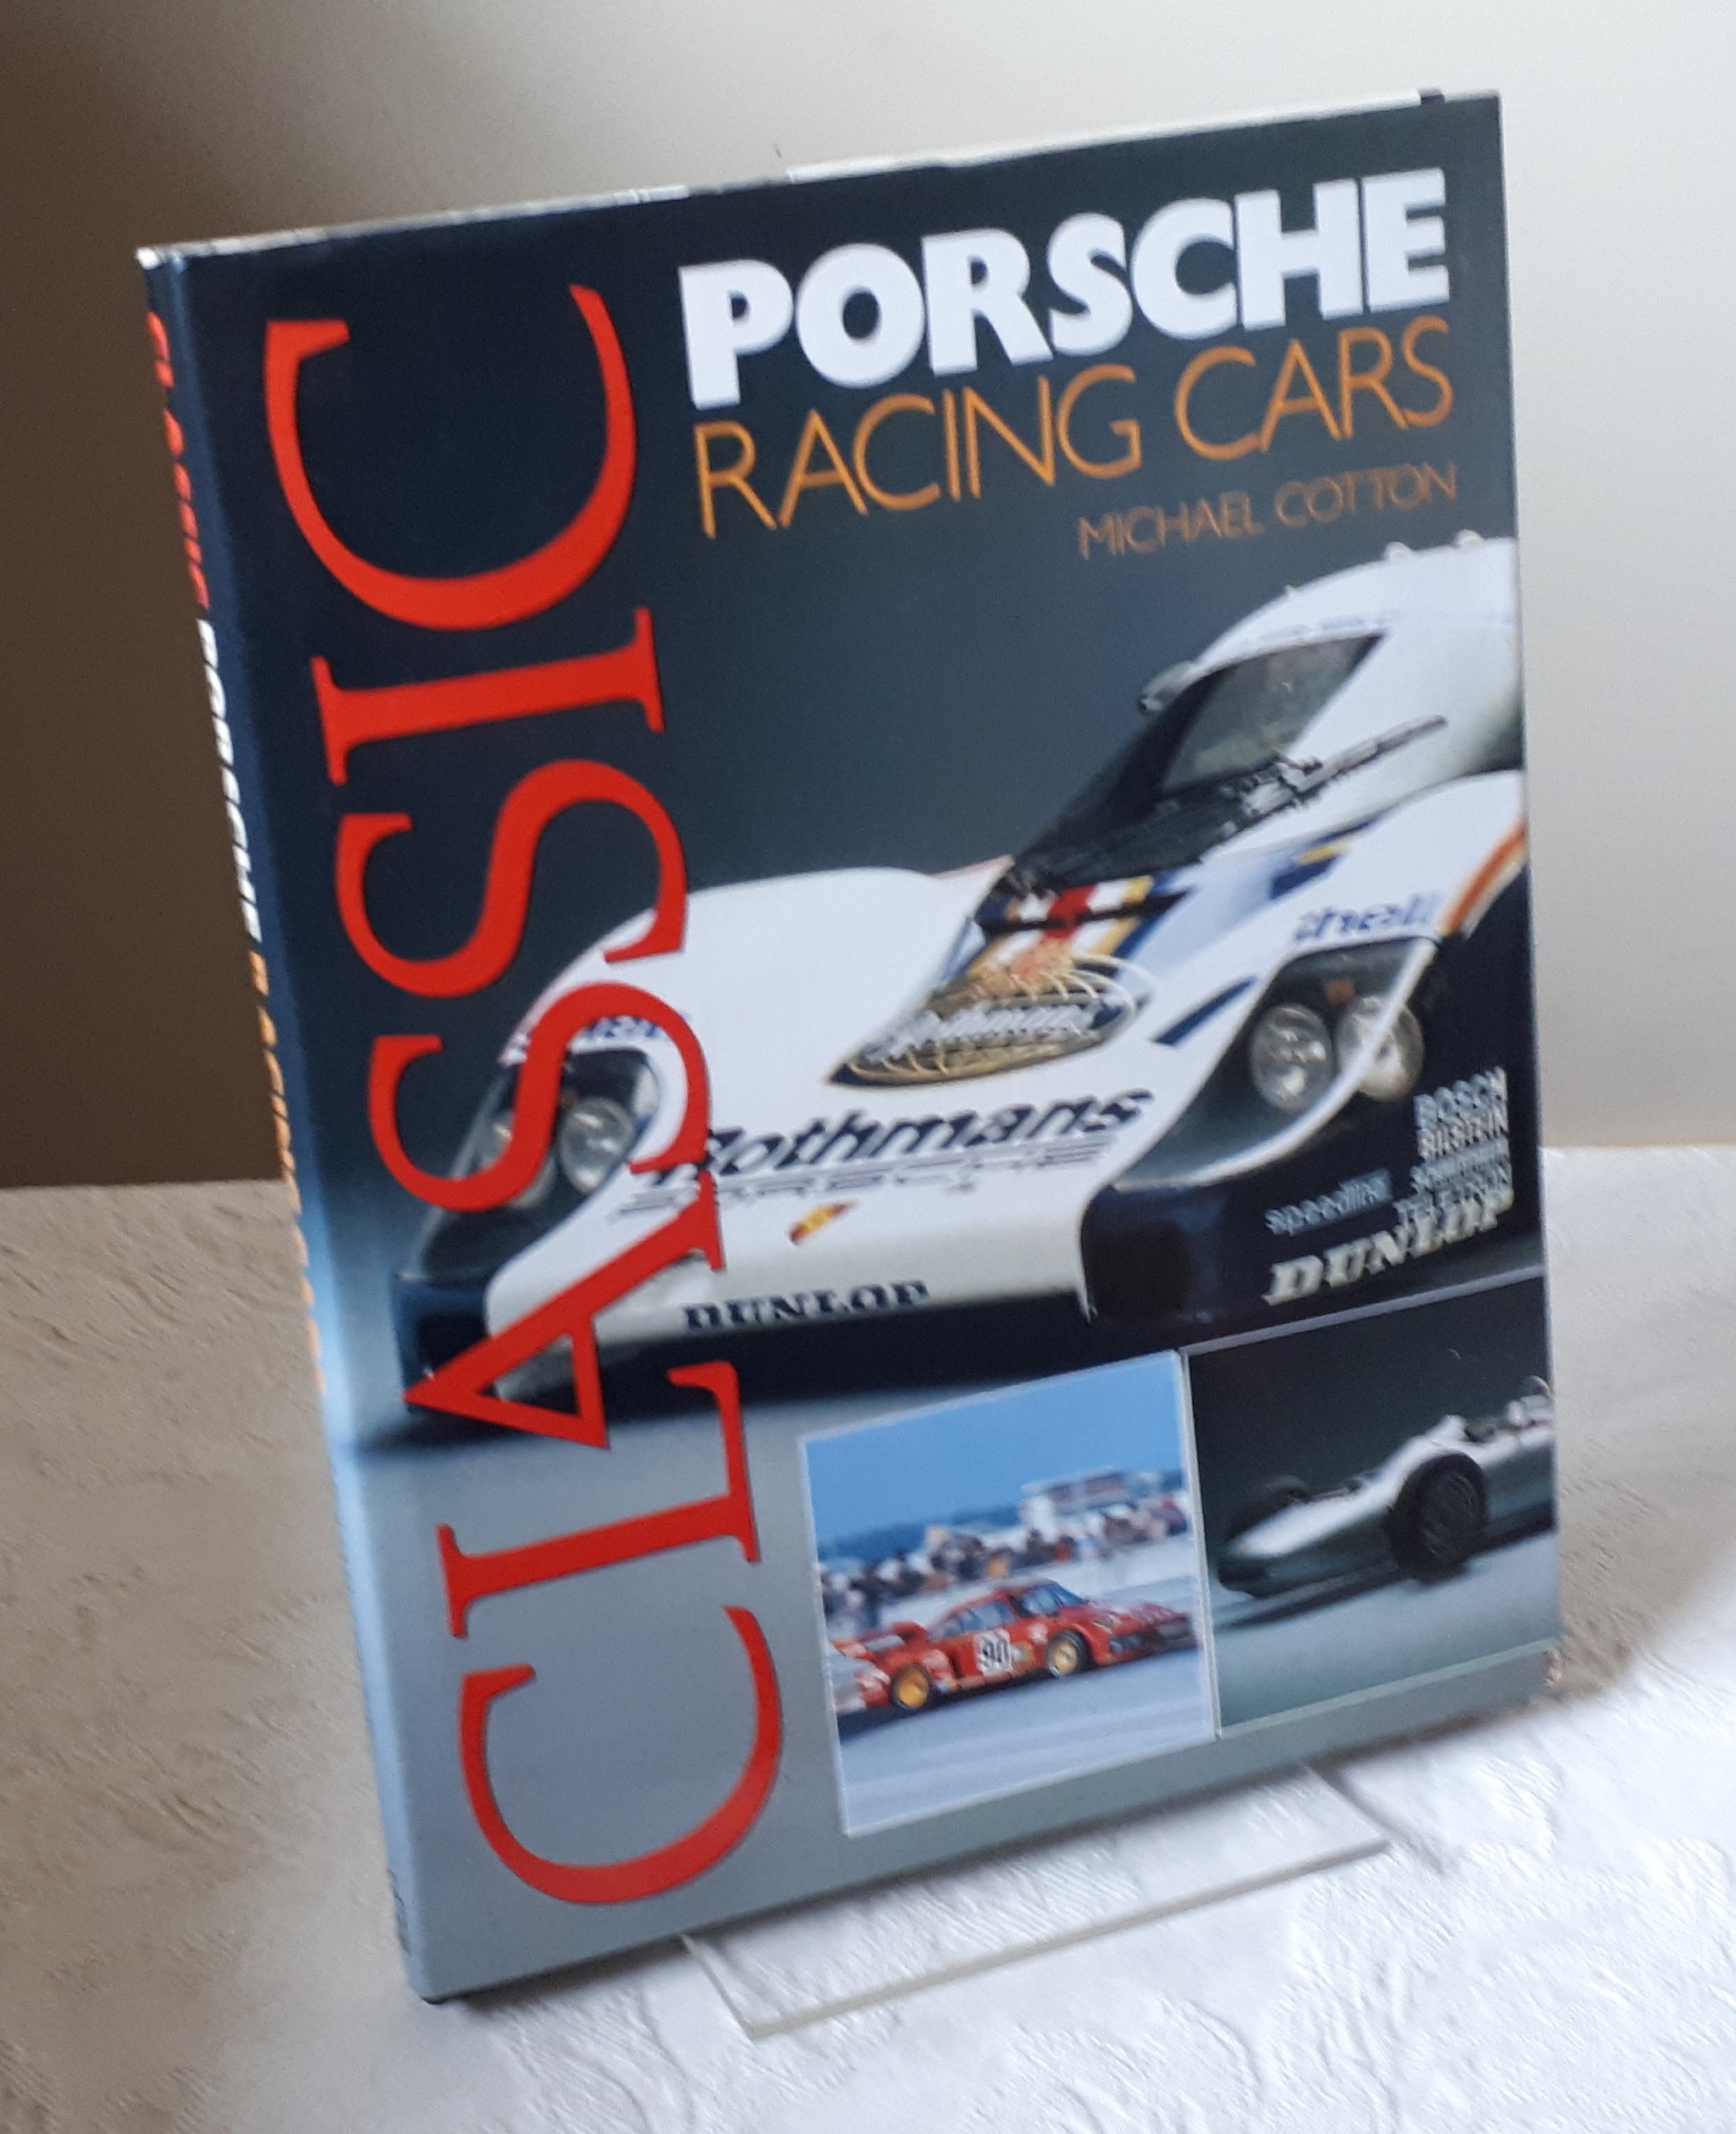 Classic Porsche racing cars - Cotton, Michael